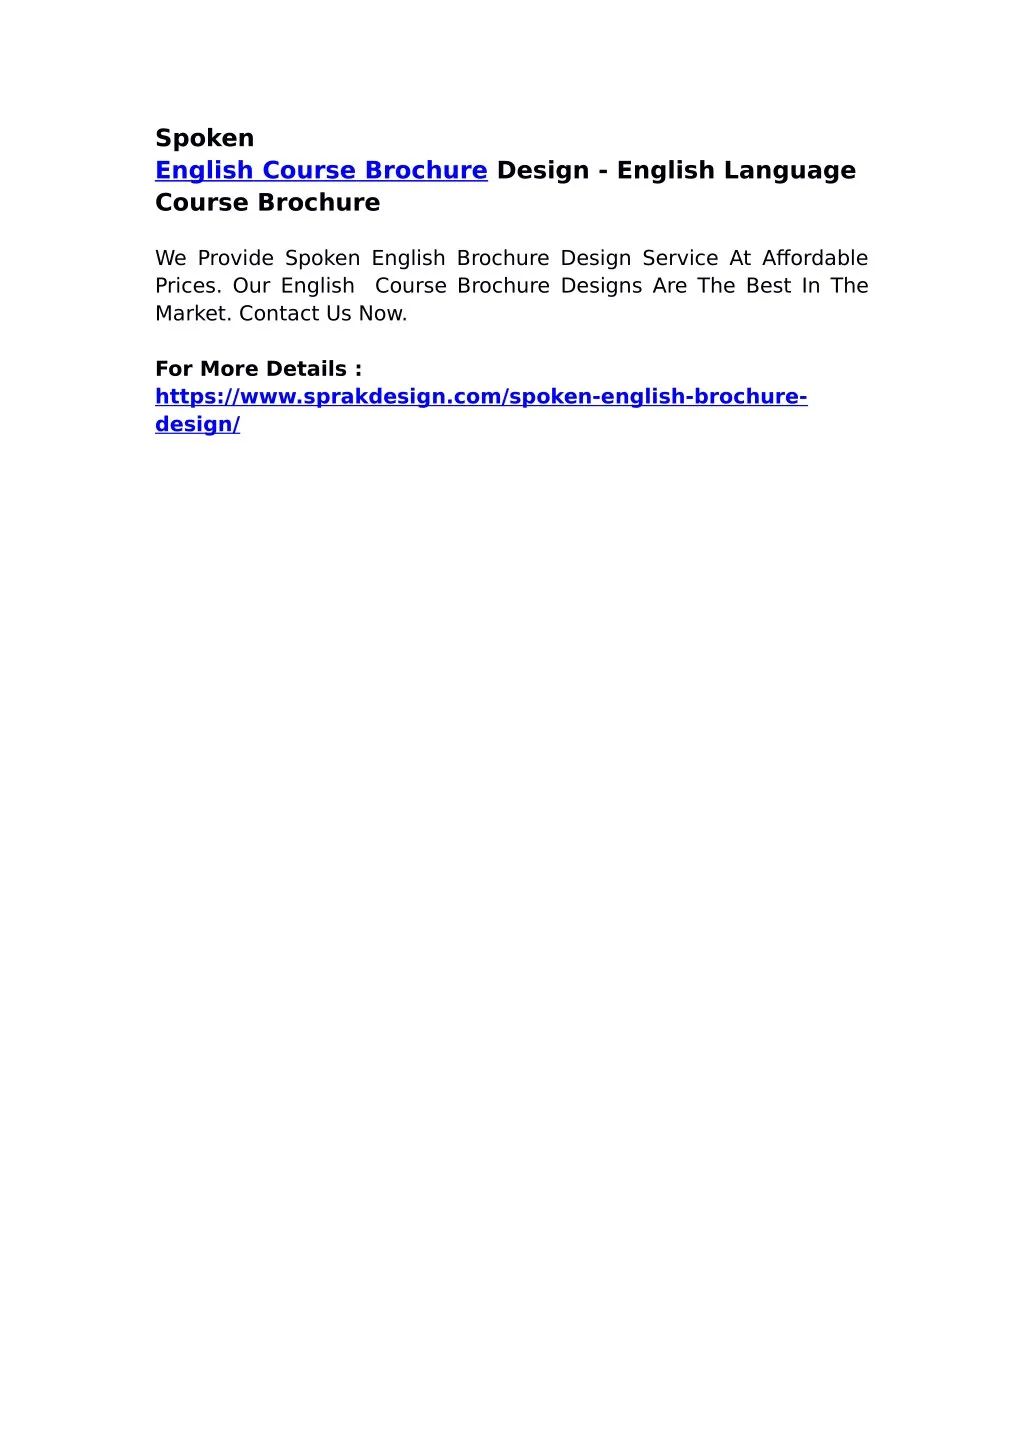 spoken english course brochure